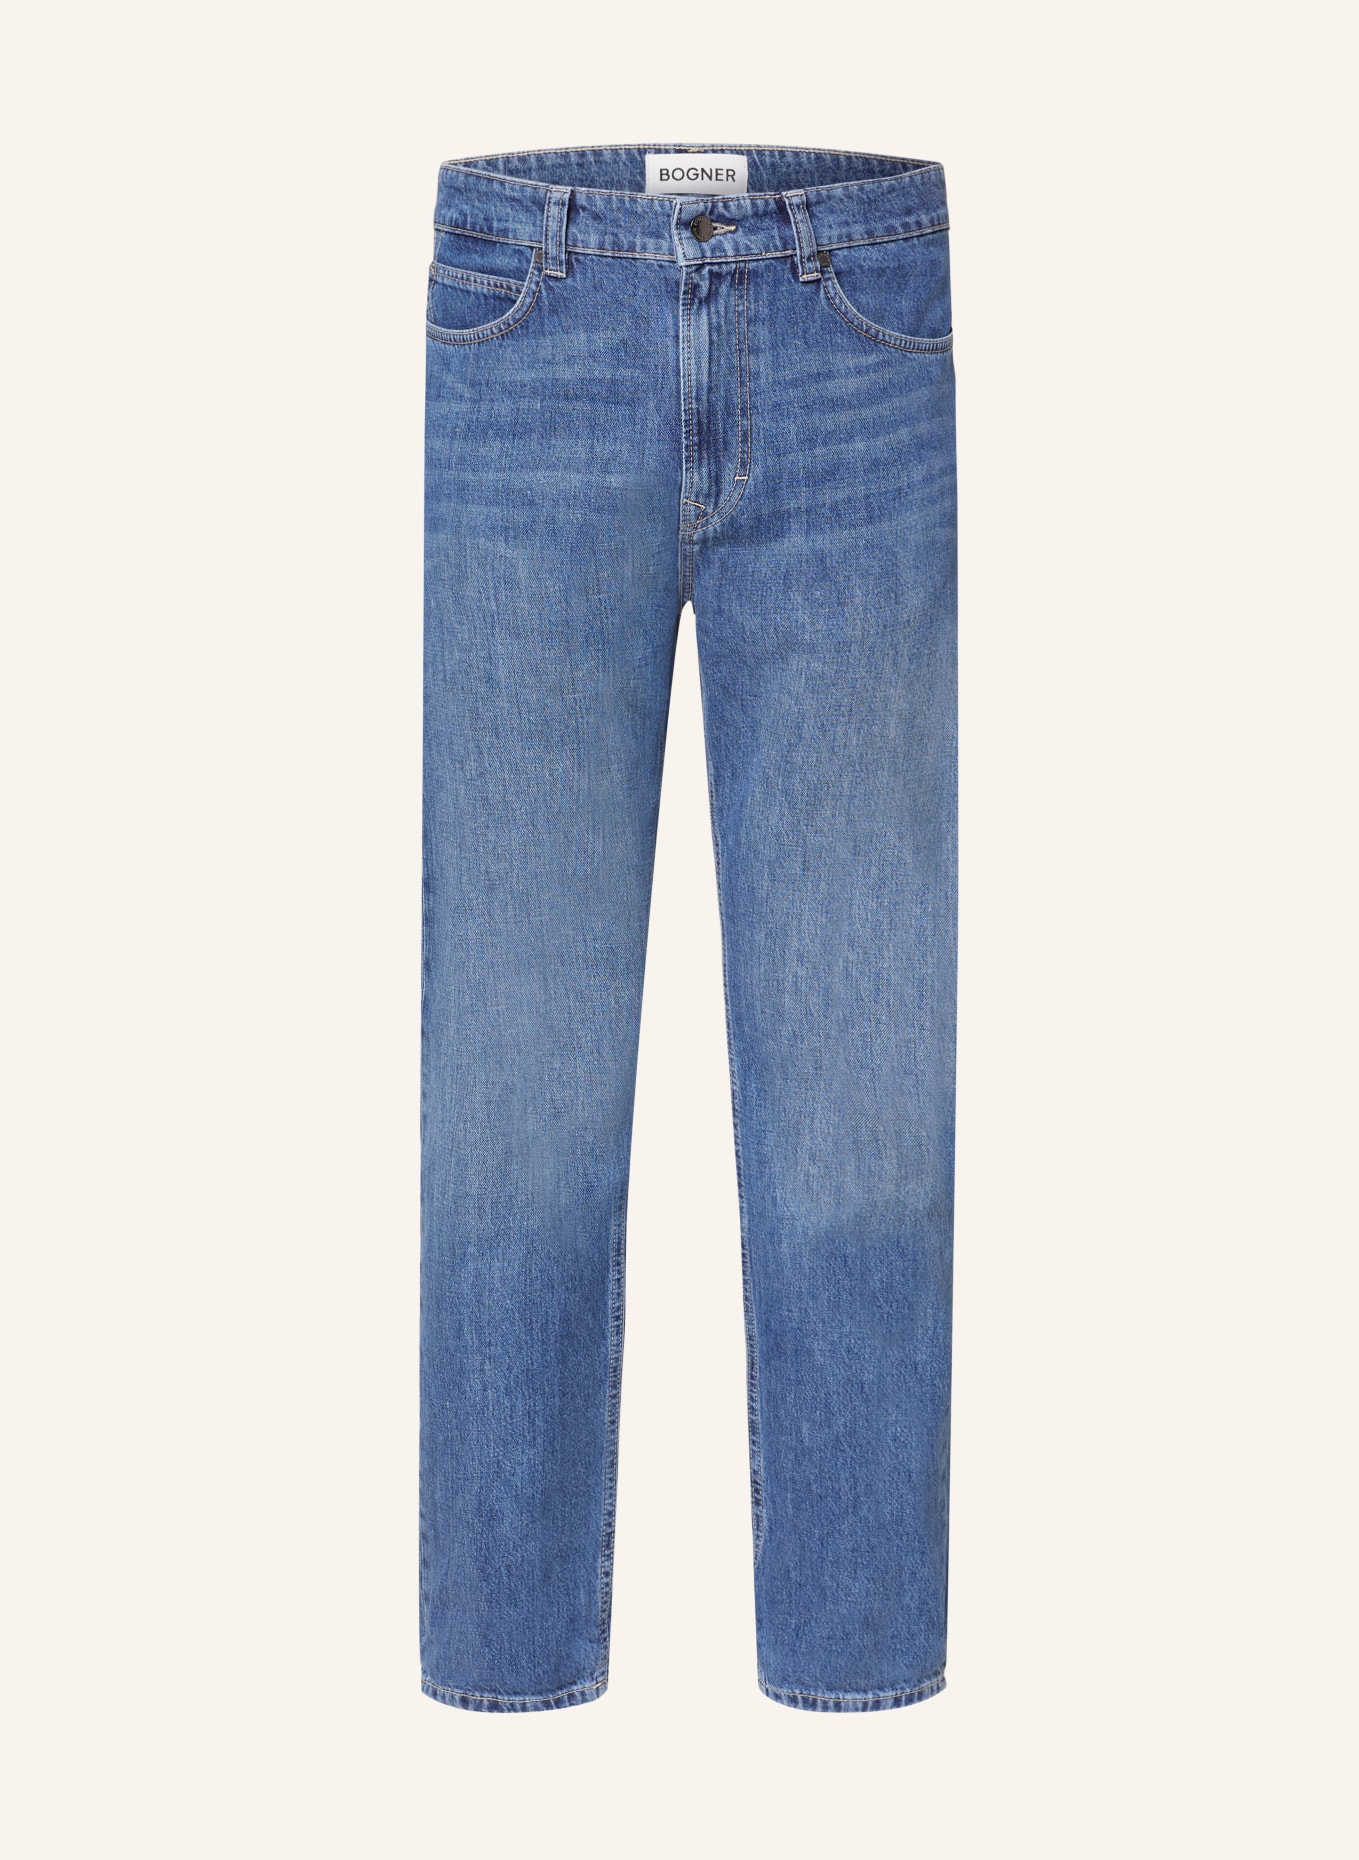 BOGNER Jeans BRIAN tapered fit, Color: 416 denim light (Image 1)